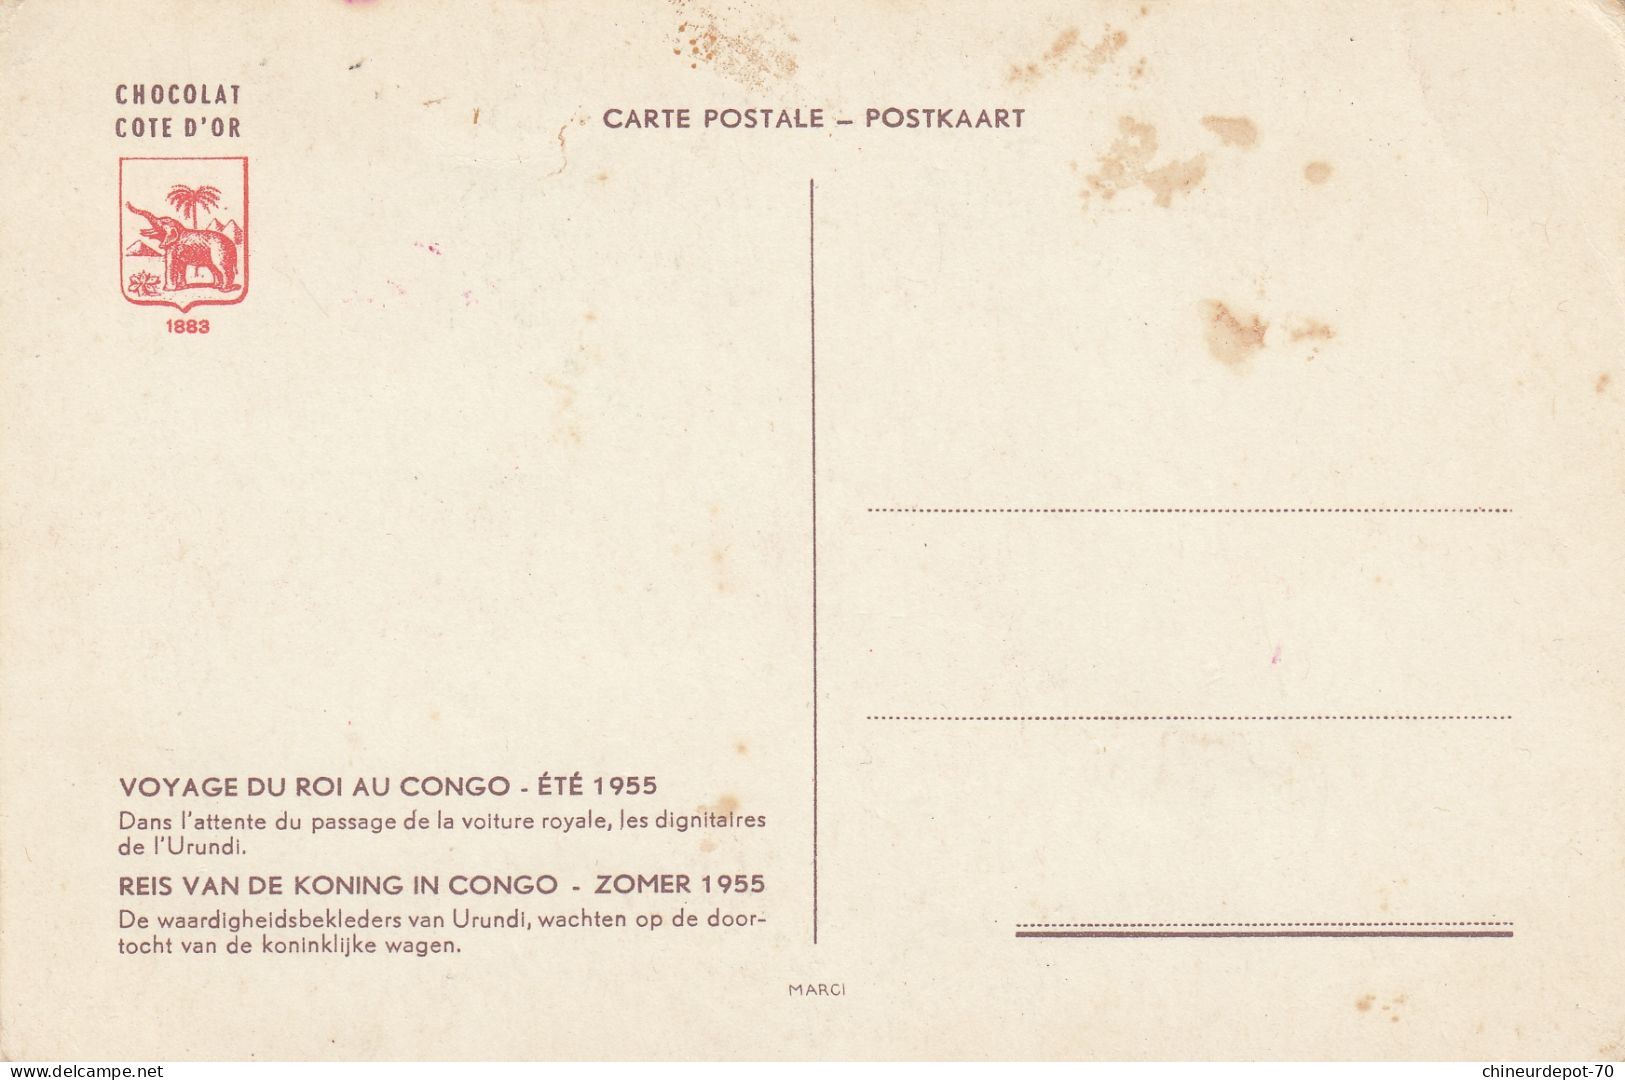 CHOCOLAT CÔTE D'OR CARTE POSTALE 1883 VOYAGE DU ROI AU CONGO ÉTÉ 1955 - Congo Belge